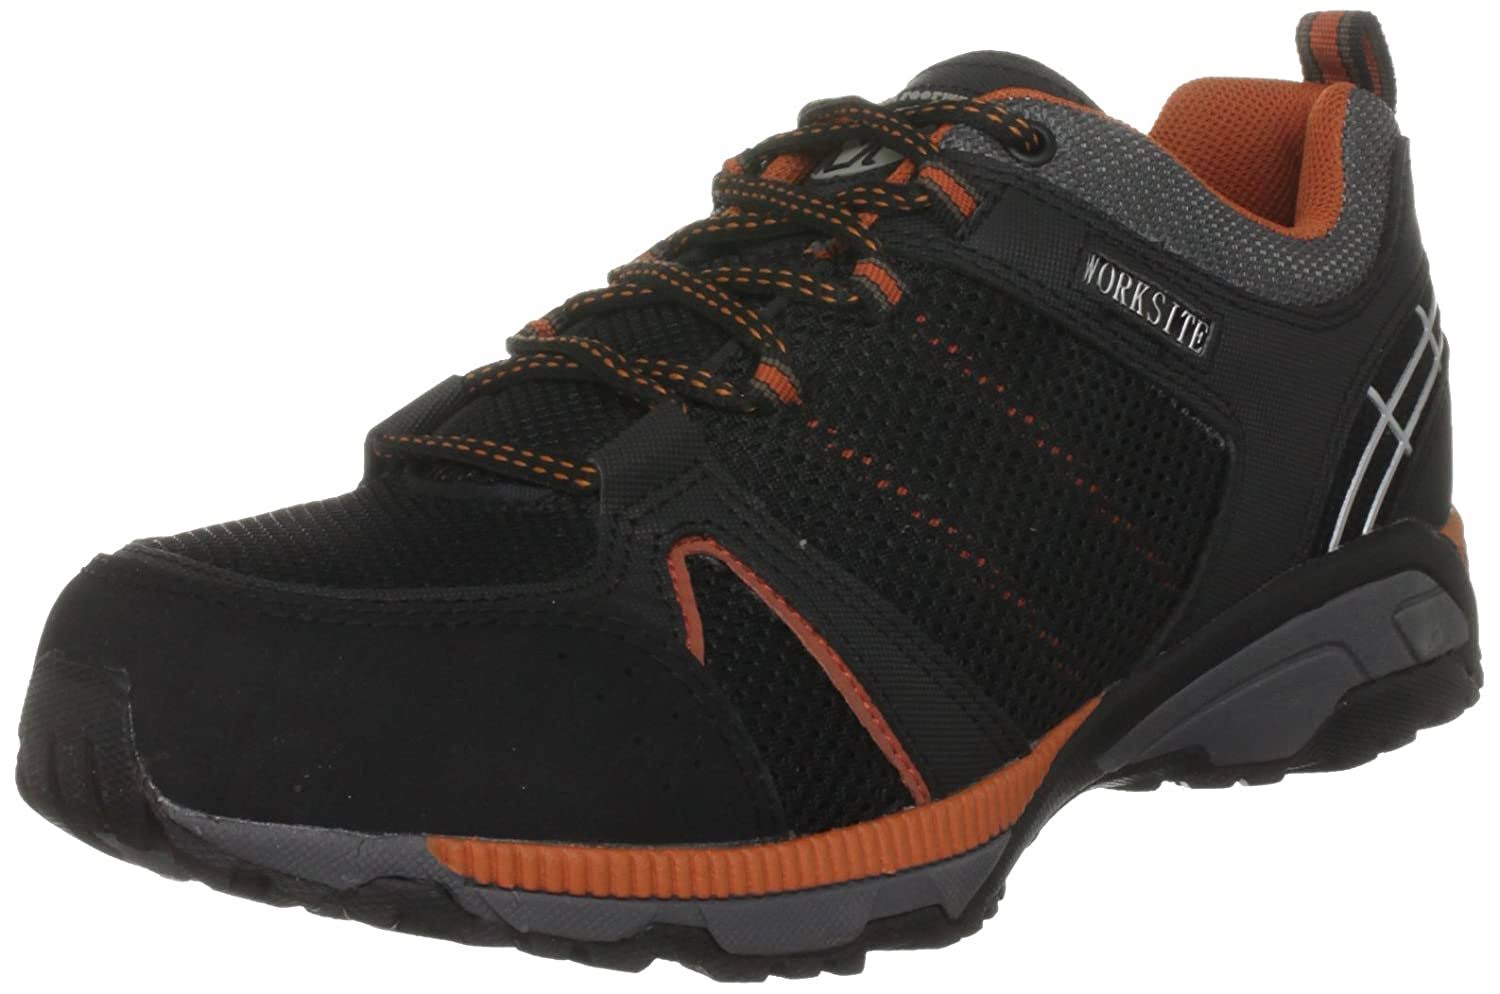 Worksite Men's Safety Trainer Shoes - Black and Orange, 10 UK